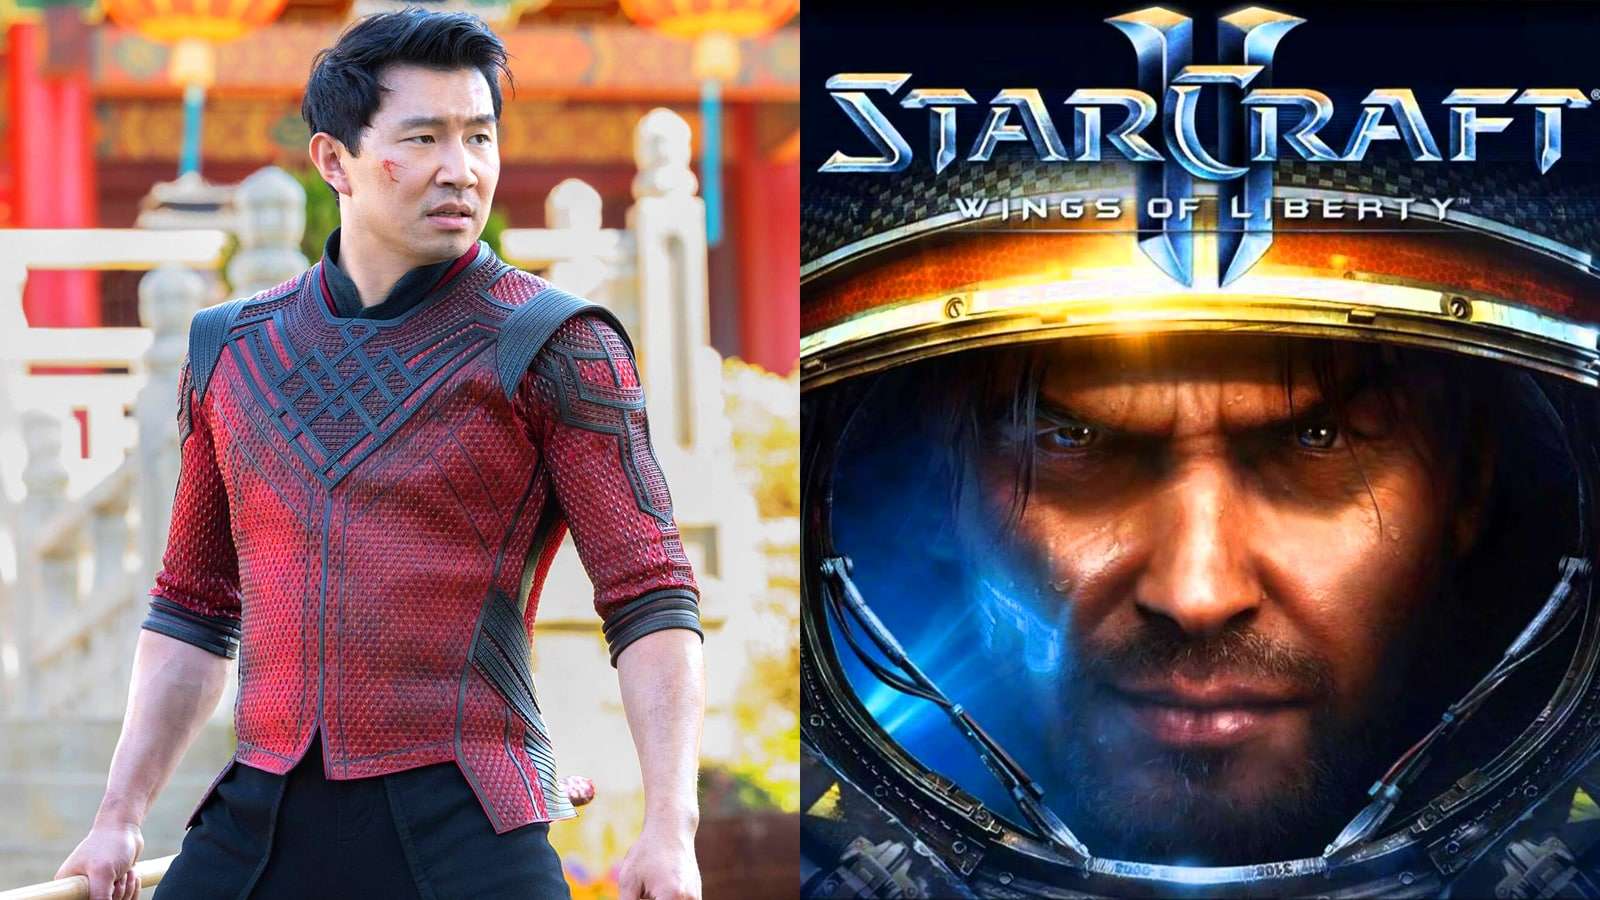 An image of Shang Chi actor Simu Liu next to Starcraft key art.